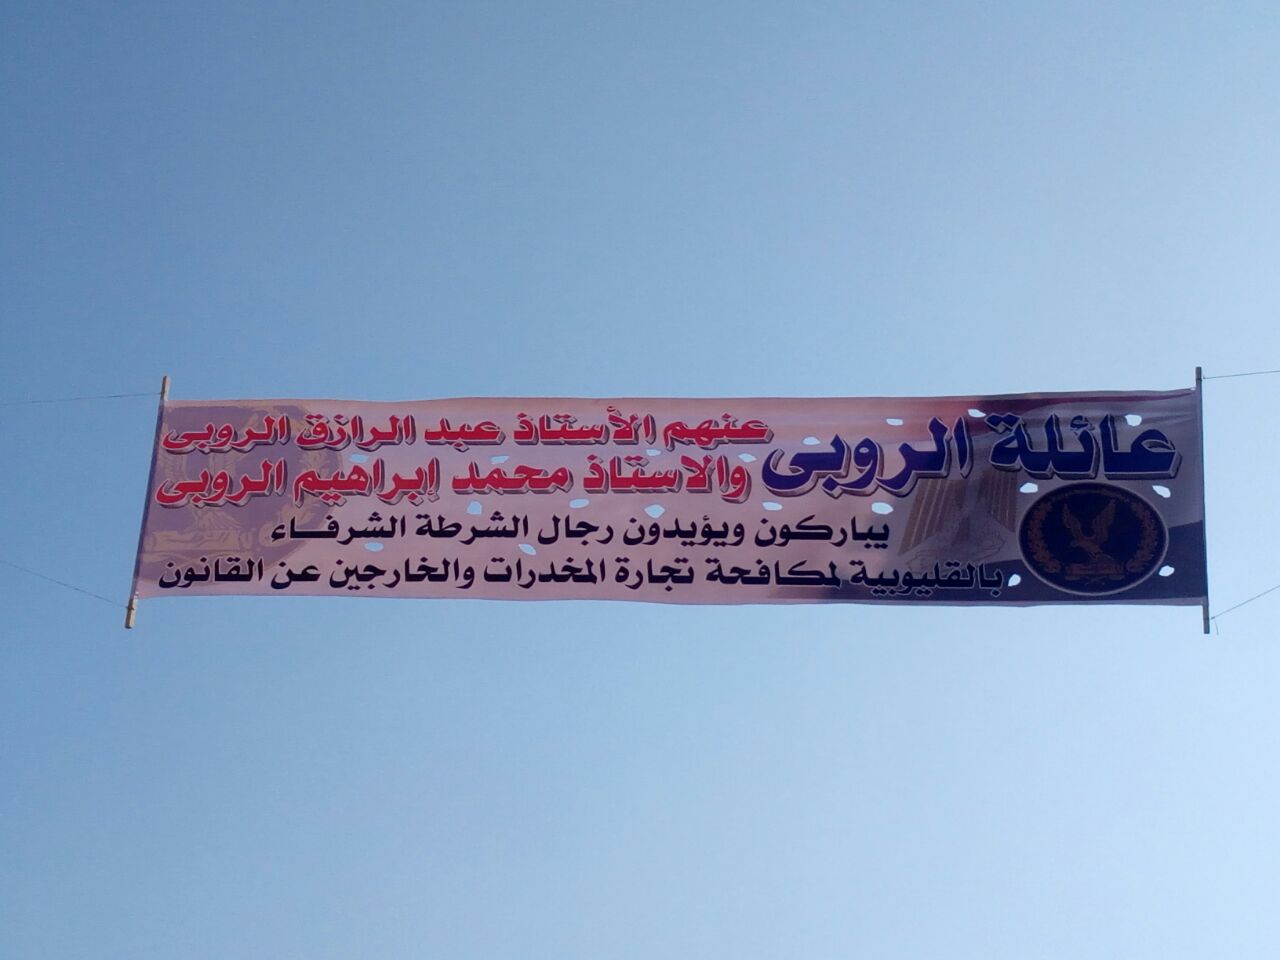 أهالى قرية أبو الغيط ترفع لافتات لدعم الشرطة  (2)